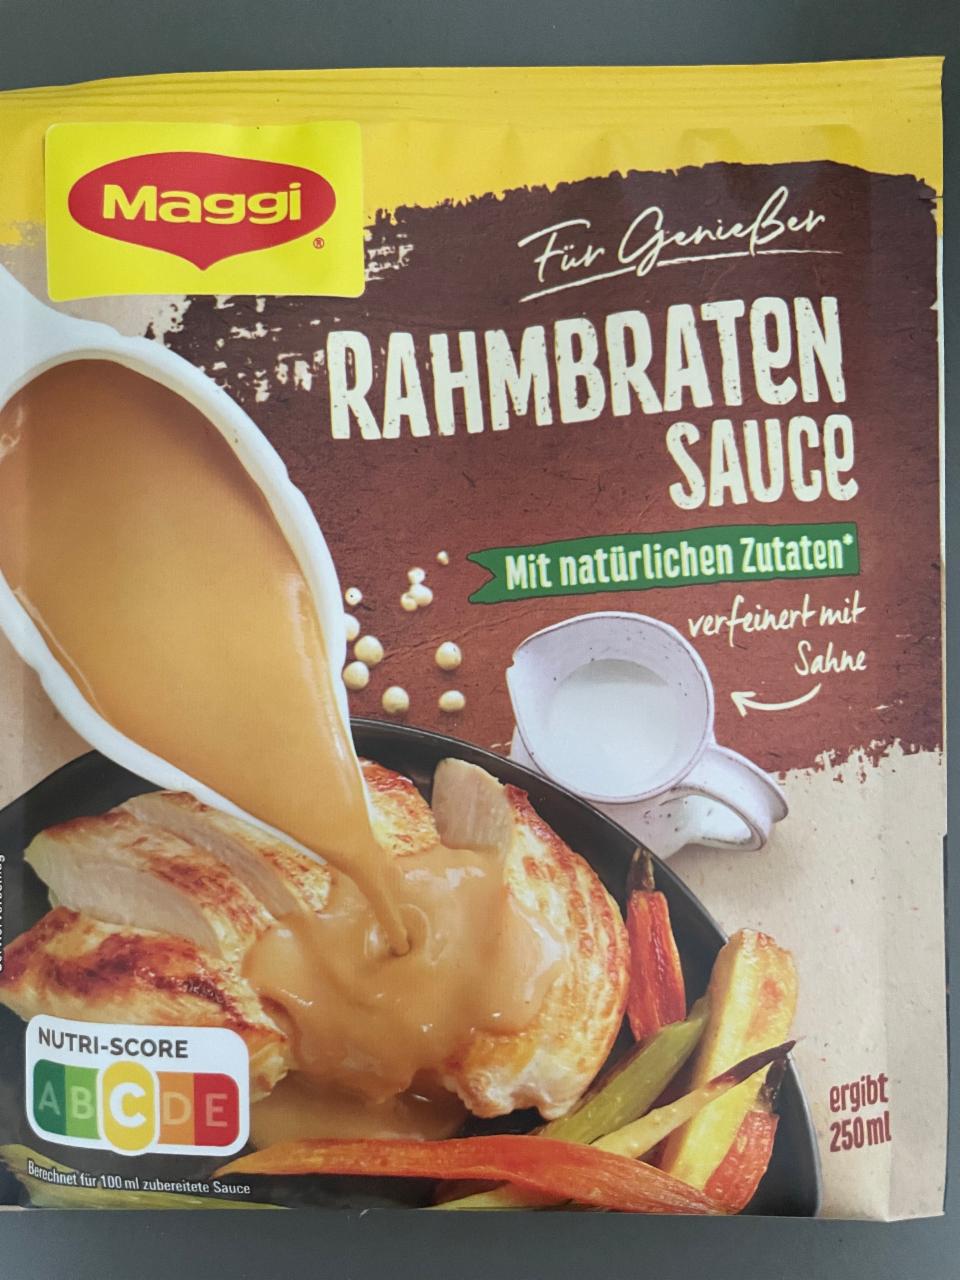 Fotografie - Für Genießer Rahmbraten sauce mit natürlichen Zutaten Maggi